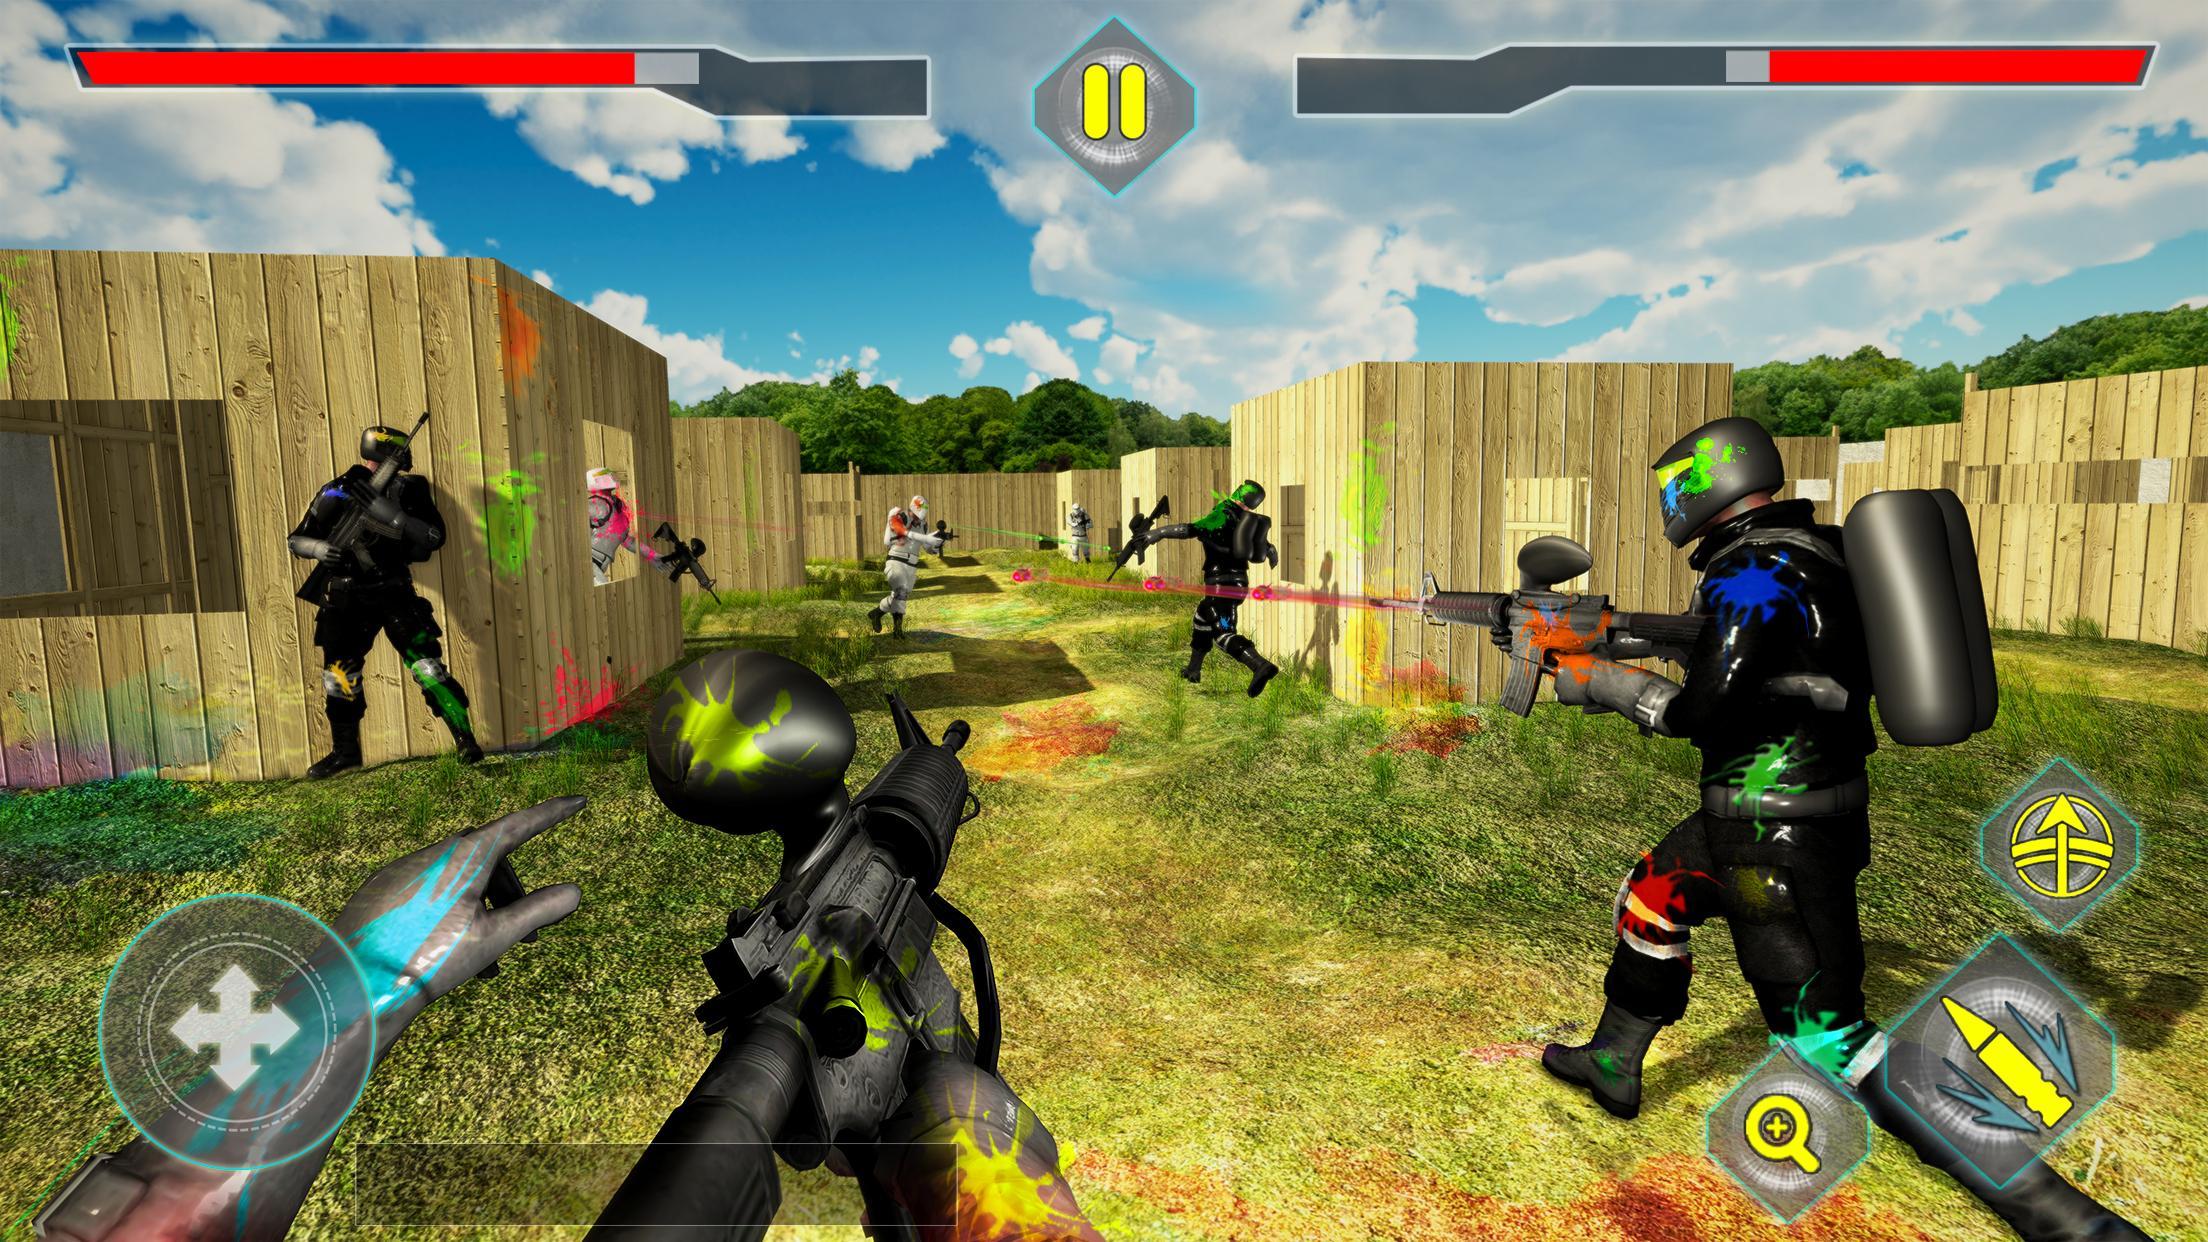 Screenshot 1 of Arena de tiro de paintball: combate real no campo de batalha 1.1.4